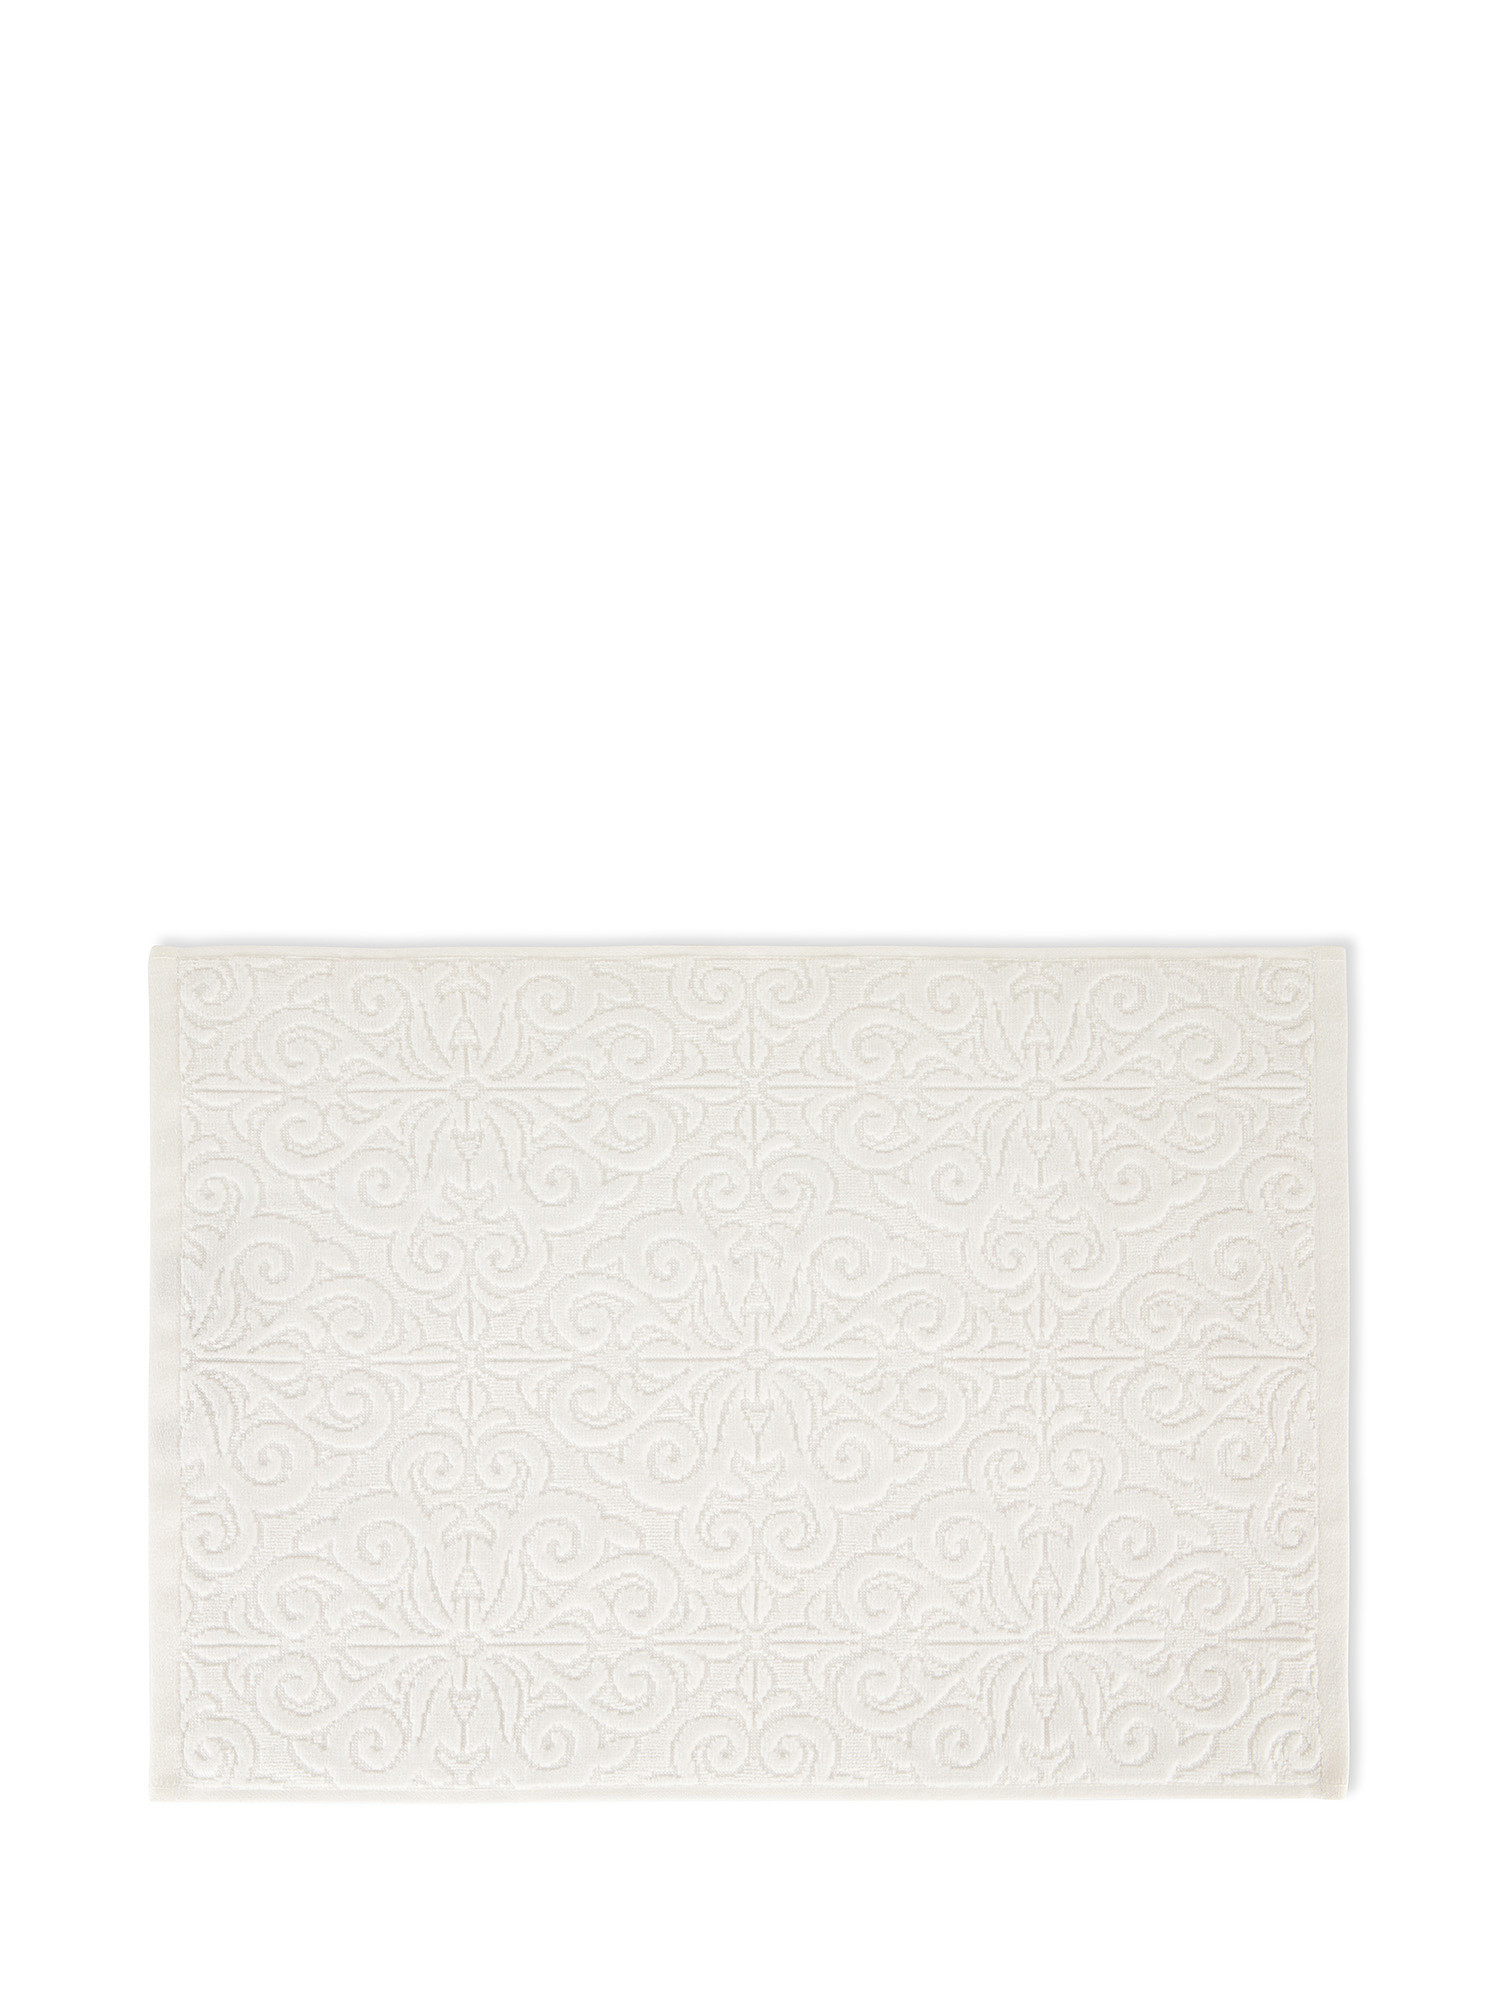 Asciugamano cotone velour motivo azulejos, Bianco, large image number 1